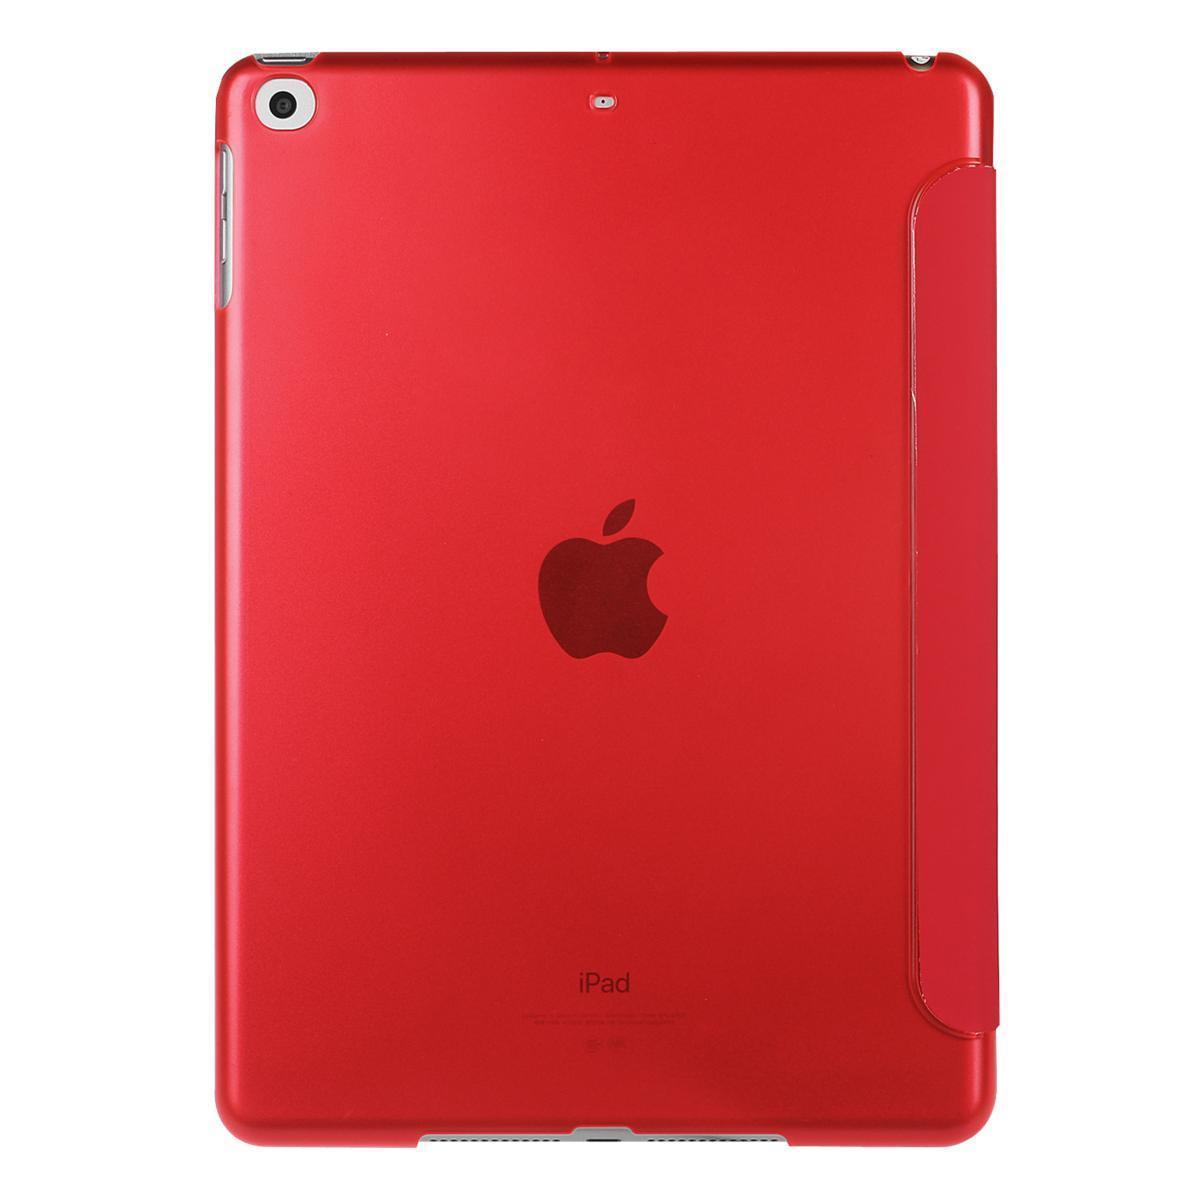 iPad ケース iPad5 / iPad6 / iPad Air1 / iPad Air2 兼用 三つ折スマートカバー PUレザー アイパッド カバー スタンド機能 レッド_画像3